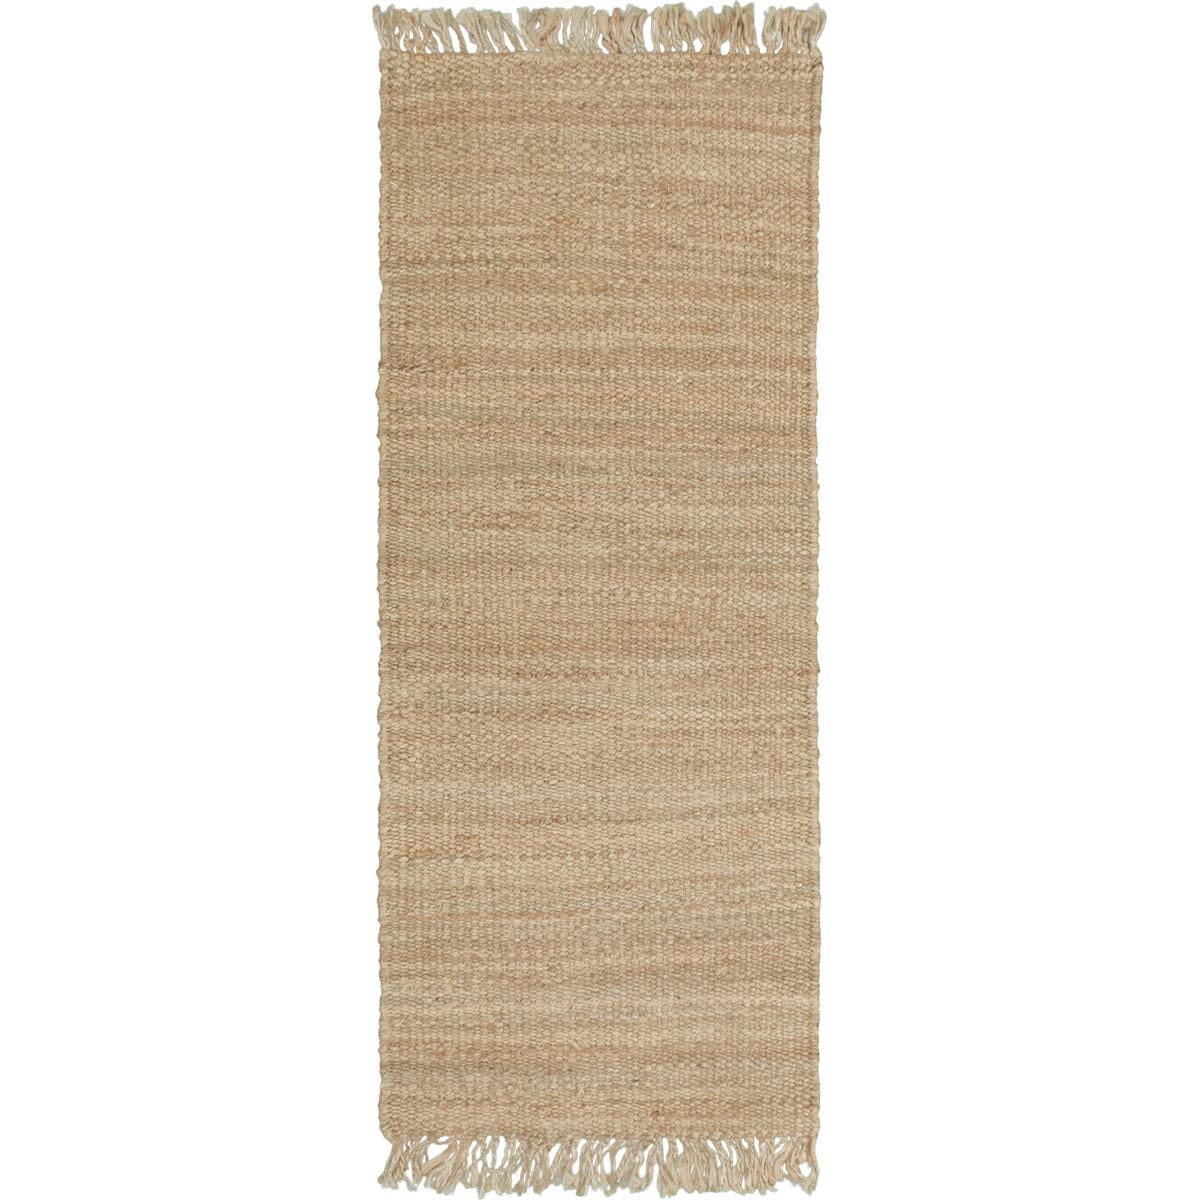 שטיח תמר אריגה גסה 01 בז' ראנר עם פרנזים | השטיח האדום